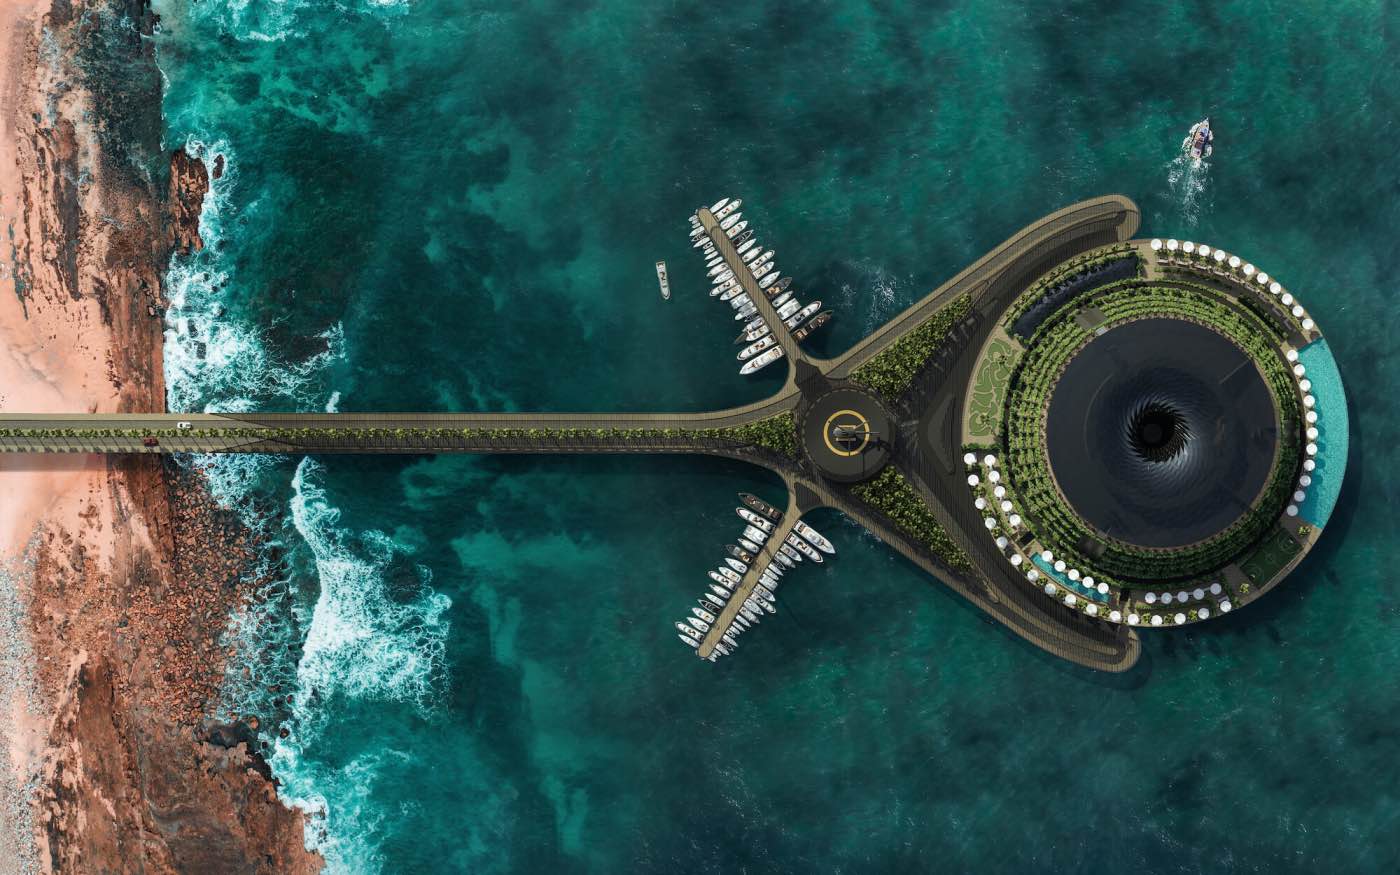 Độc đáo với khách sạn nổi ngoài biển xoay 360 độ - 1